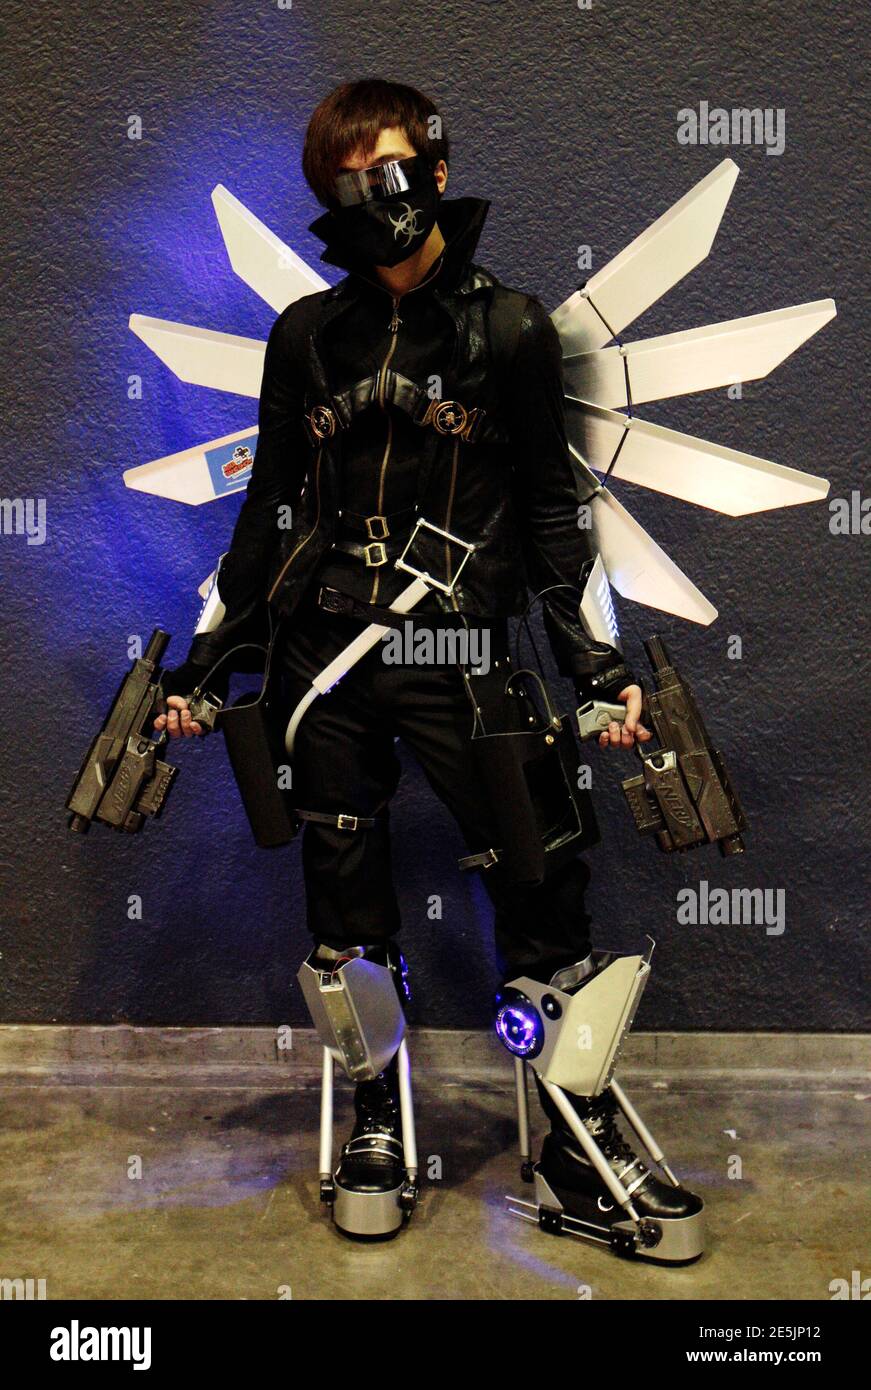 Le cojoueur Steve Chan, 22 ans, habillé comme personnage fictif 'Cathode', pose lors du salon Asia Game à Hong Kong le 24 décembre 2010. REUTERS/Tyrone Siu (CHINE - Tags: SOCIÉTÉ) Banque D'Images